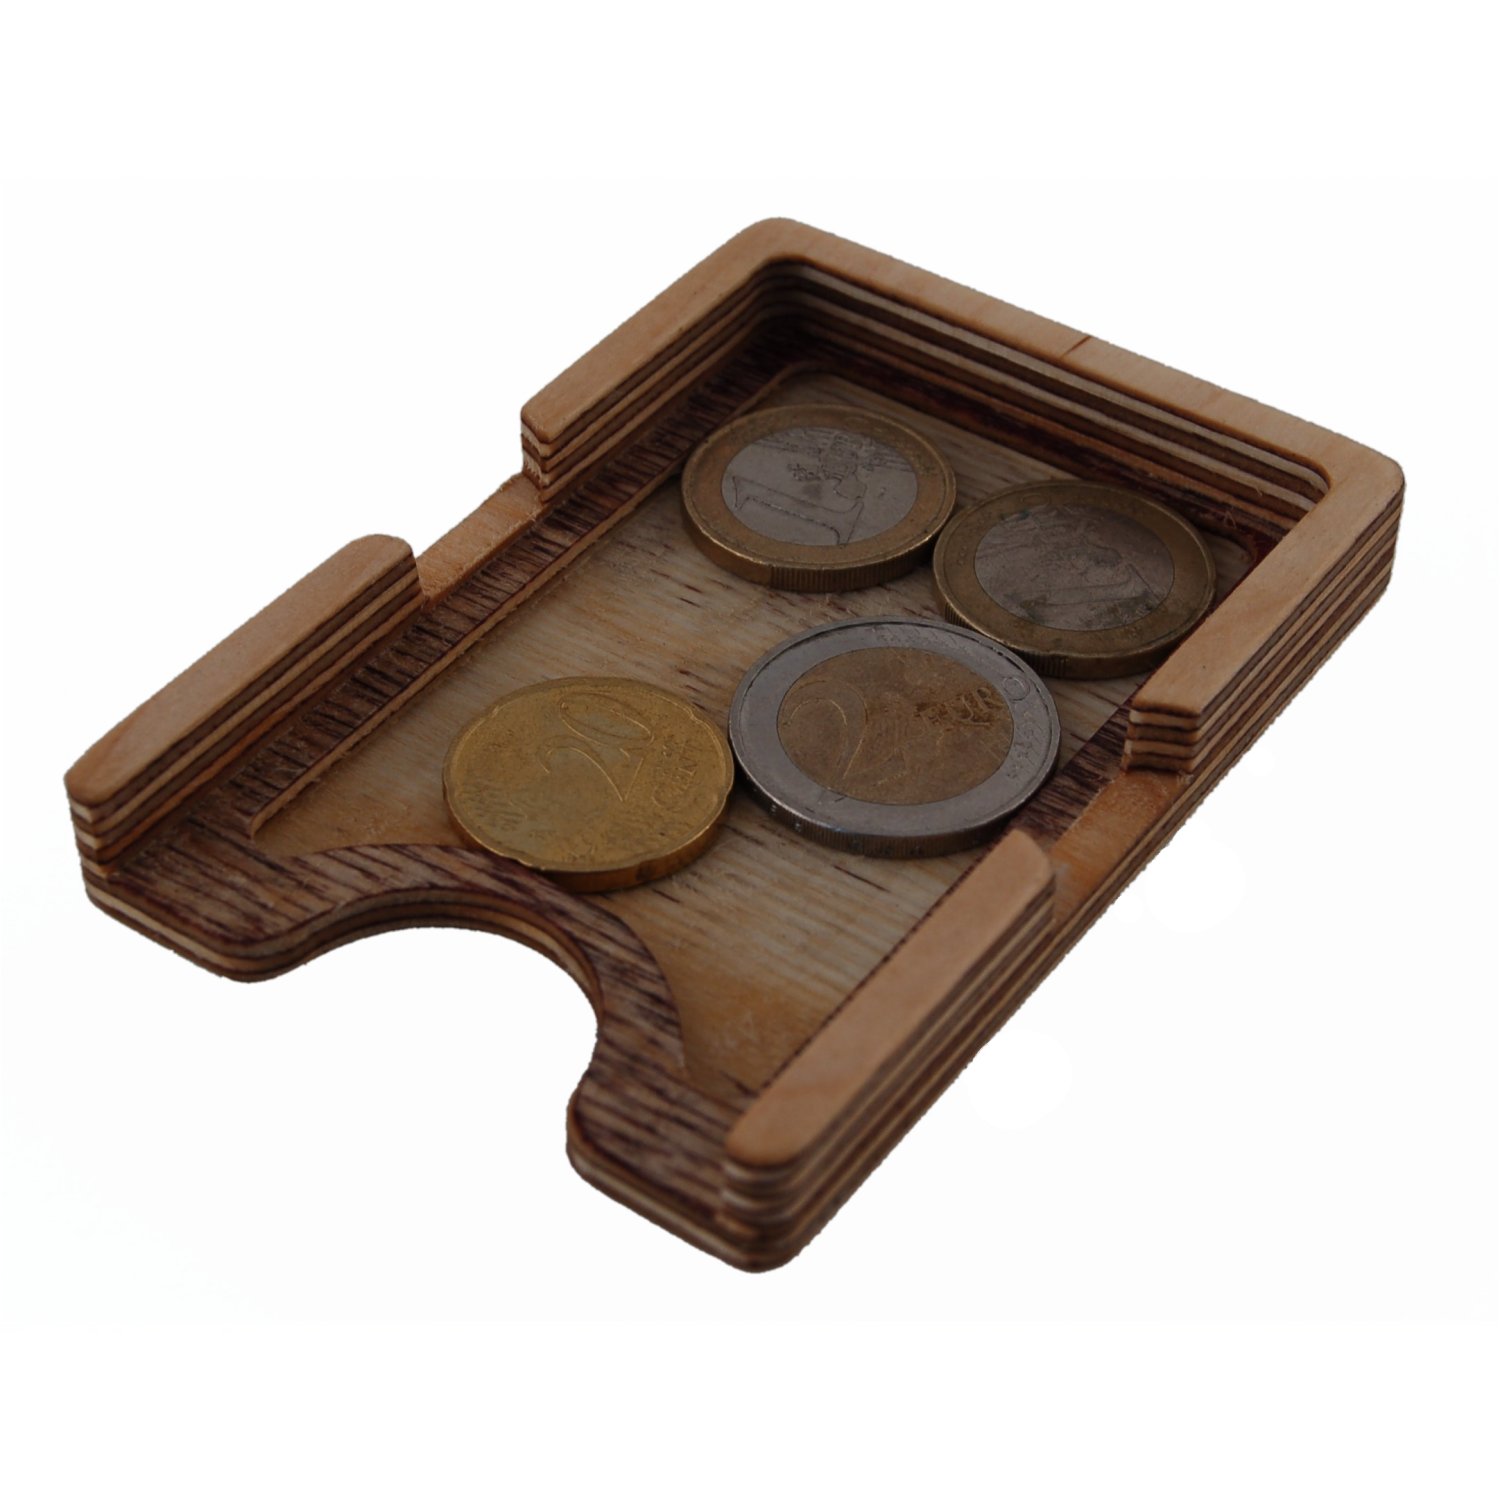 Minigeldbörse aus Holz mit Münzfach